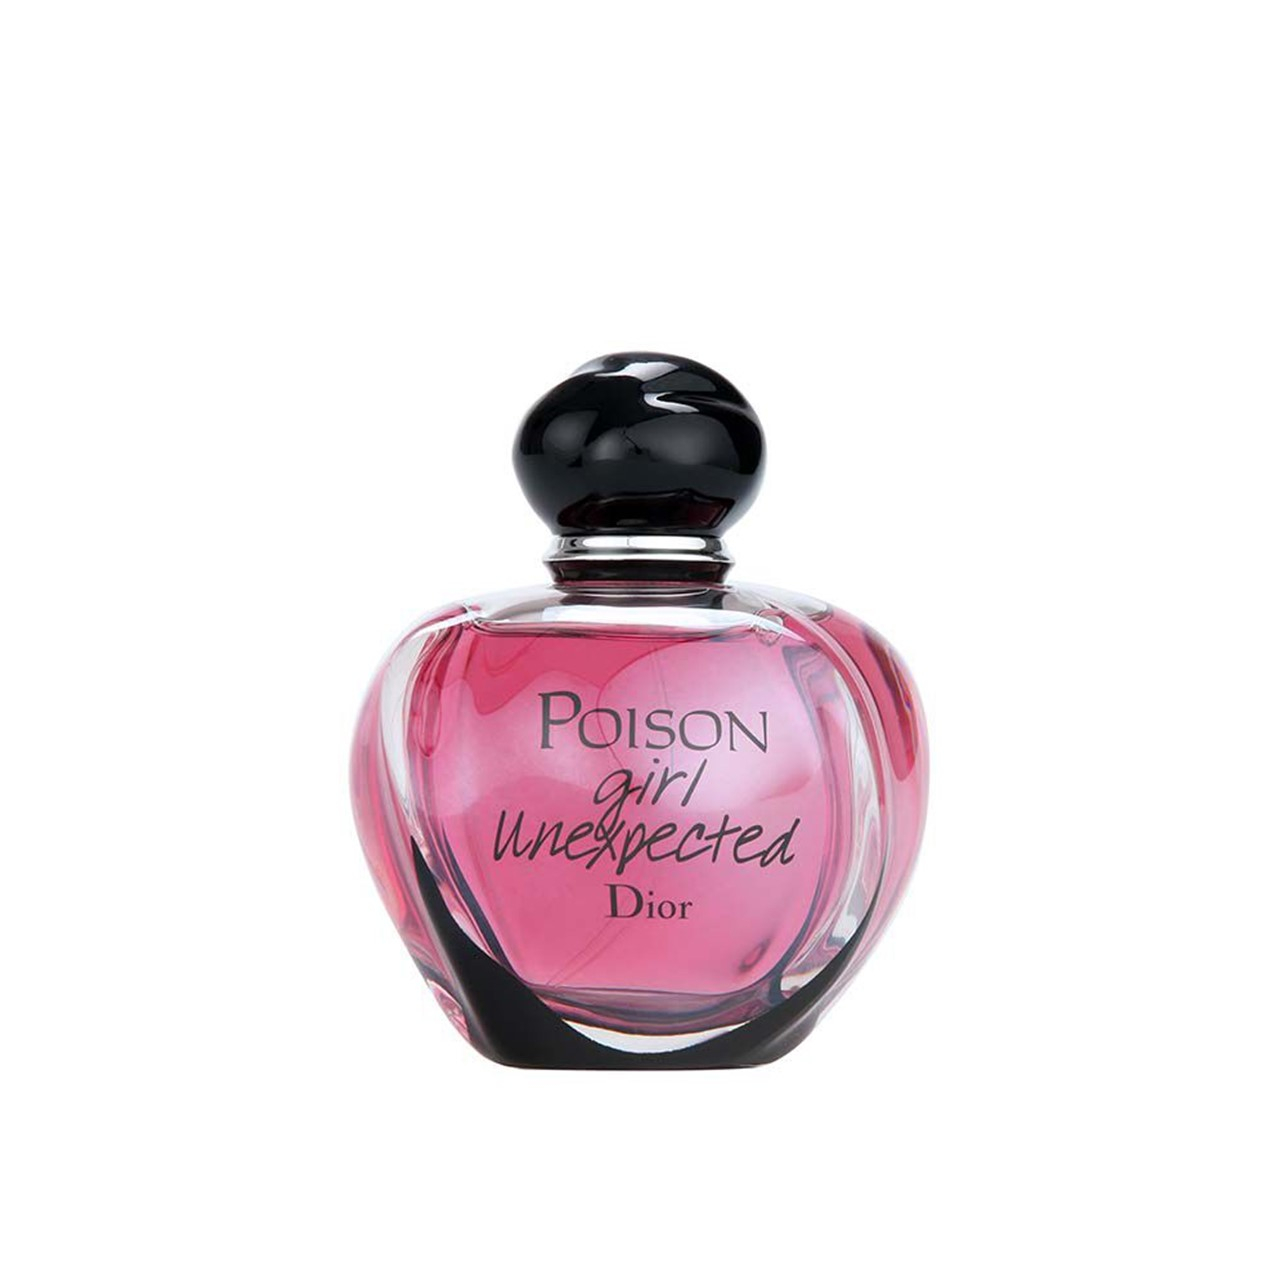 Hypnotic Poison Eau de Parfum Dior perfume - a fragrance for women 2014